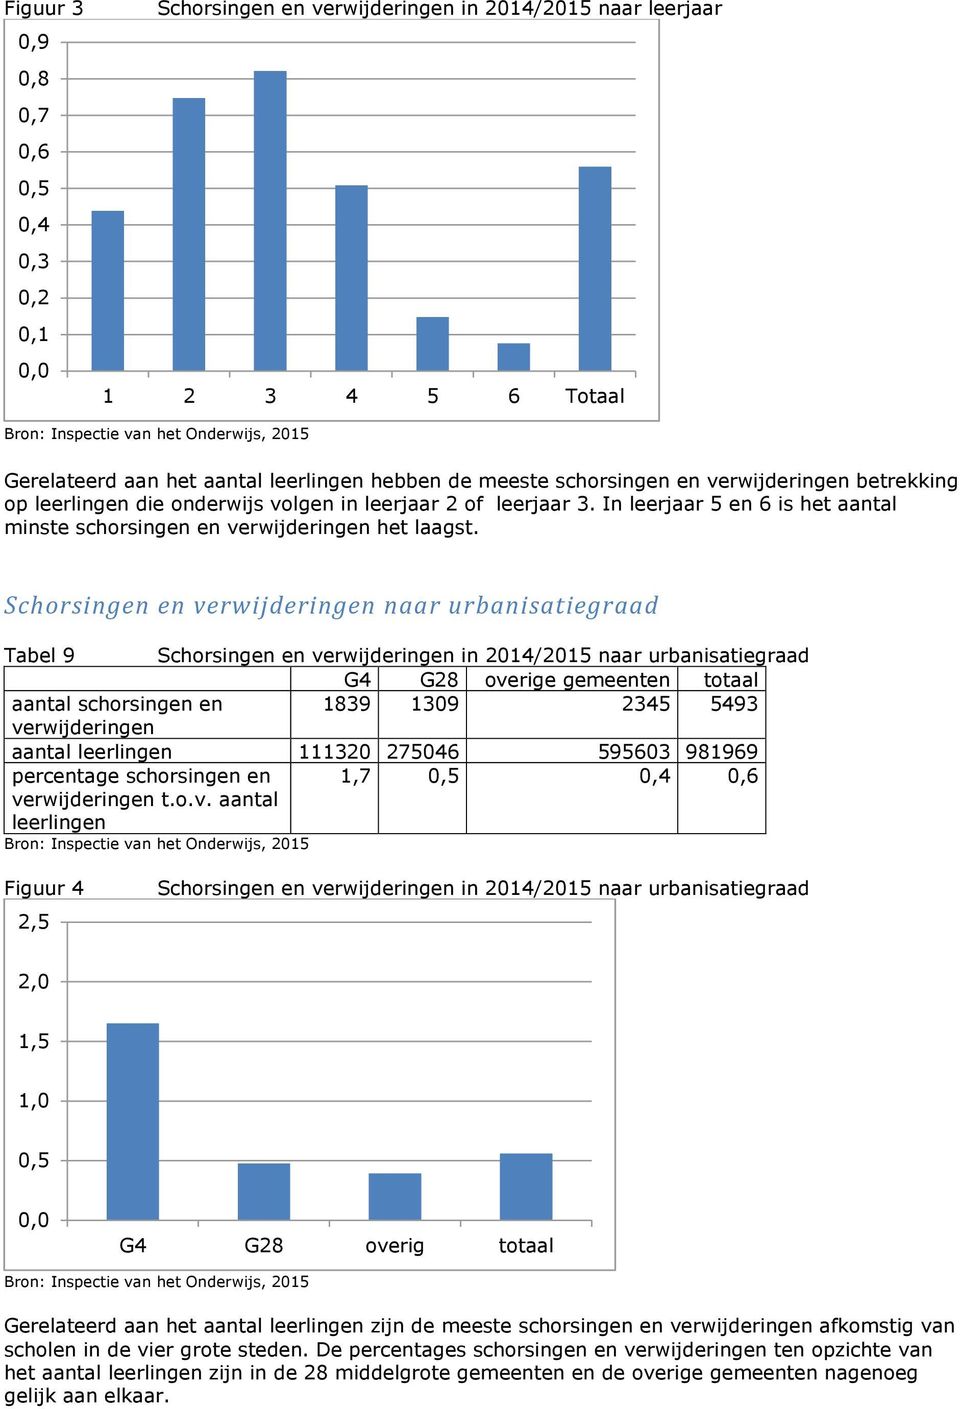 Schorsingen en verwijderingen naar urbanisatiegraad Tabel 9 Schorsingen en verwijderingen in 2014/2015 naar urbanisatiegraad G4 G28 overige gemeenten totaal aantal schorsingen en 1839 1309 2345 5493